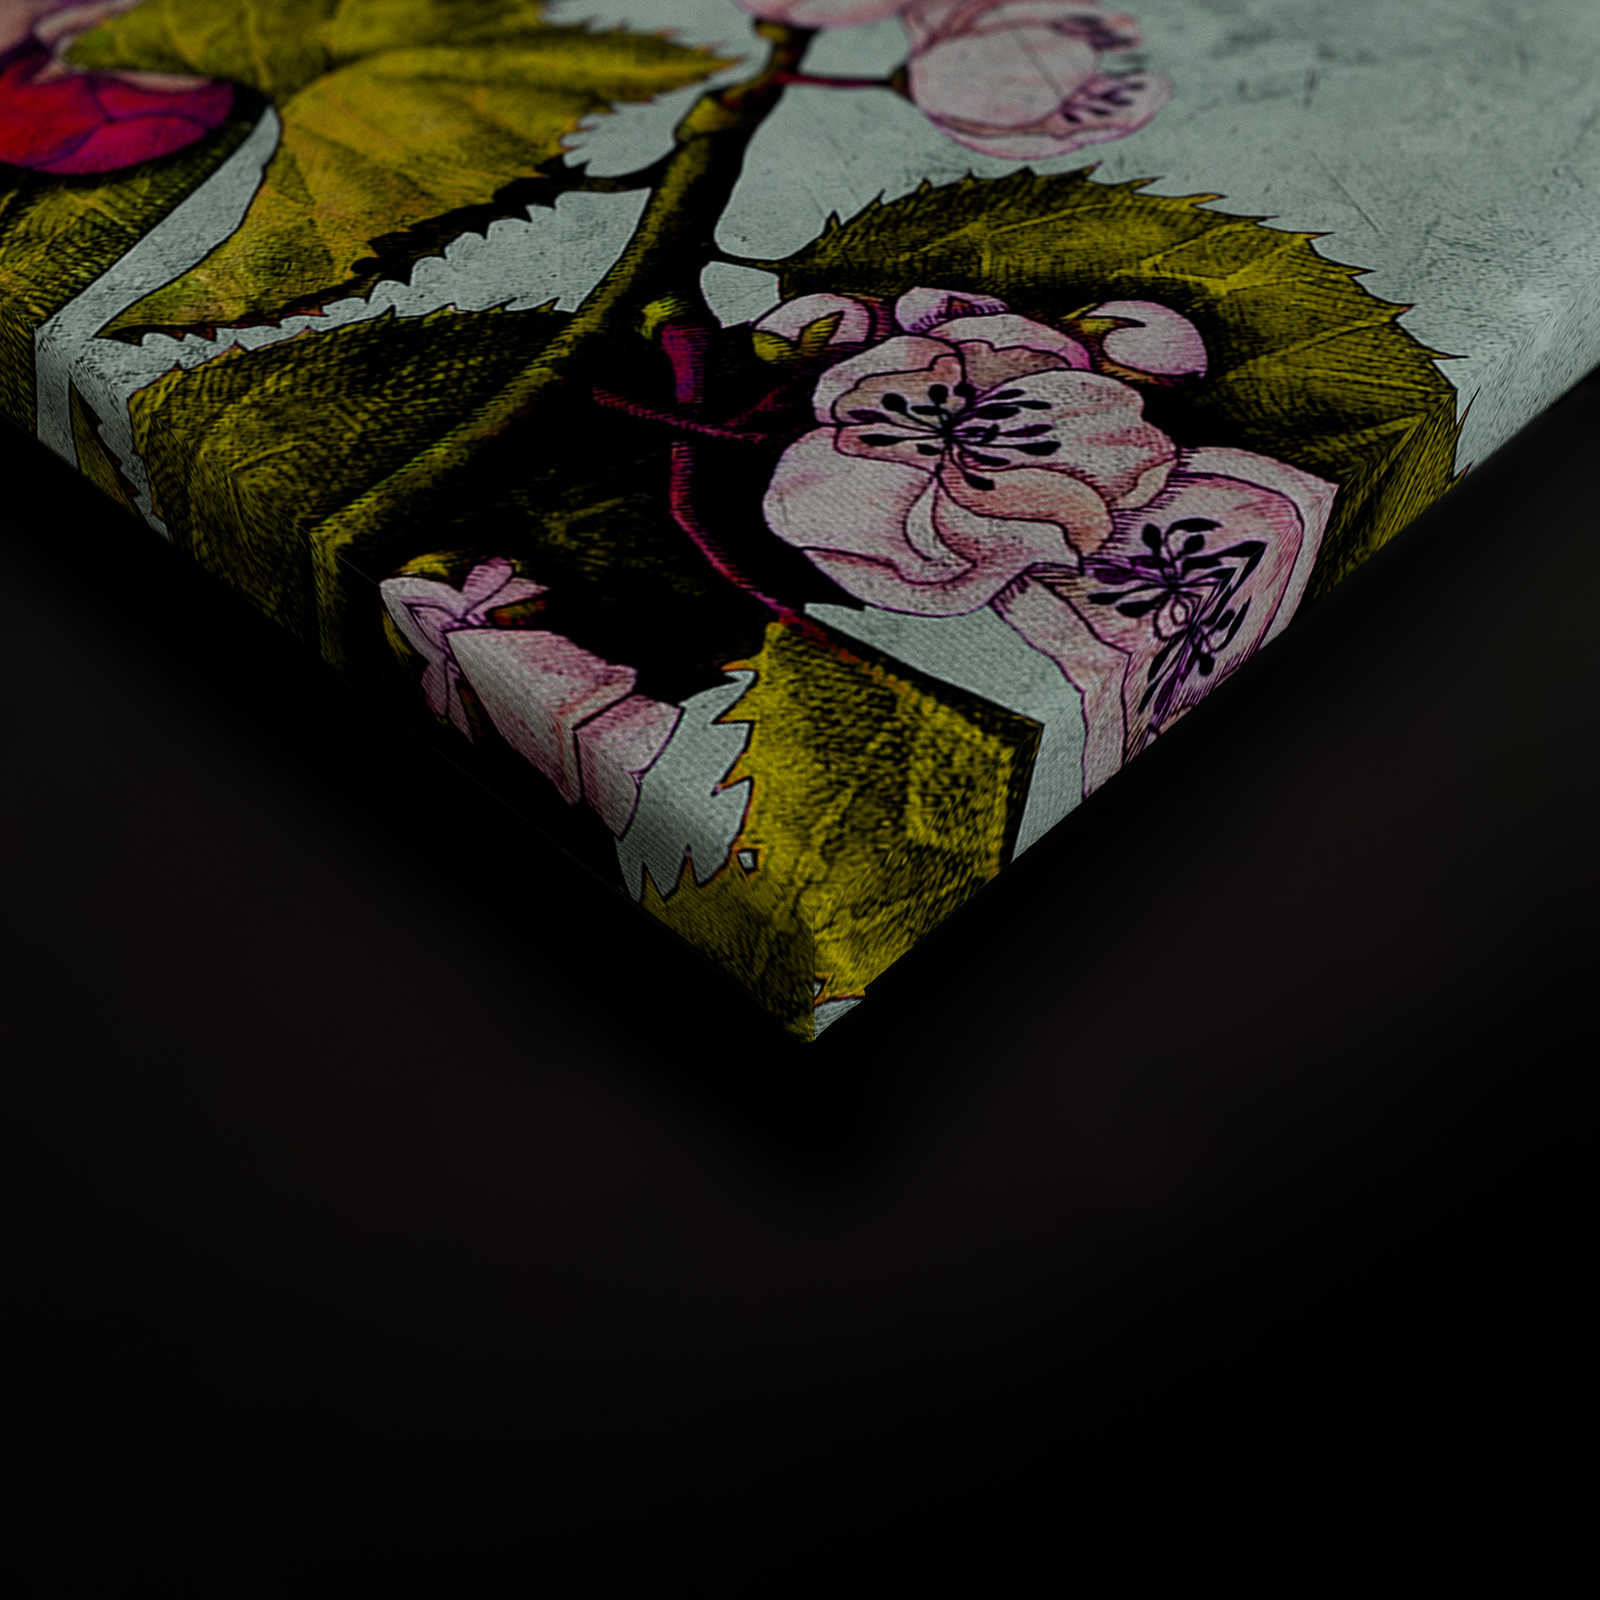             Tropical Passion 2 - Quadro su tela con fiori e boccioli - 1,20 m x 0,80 m
        